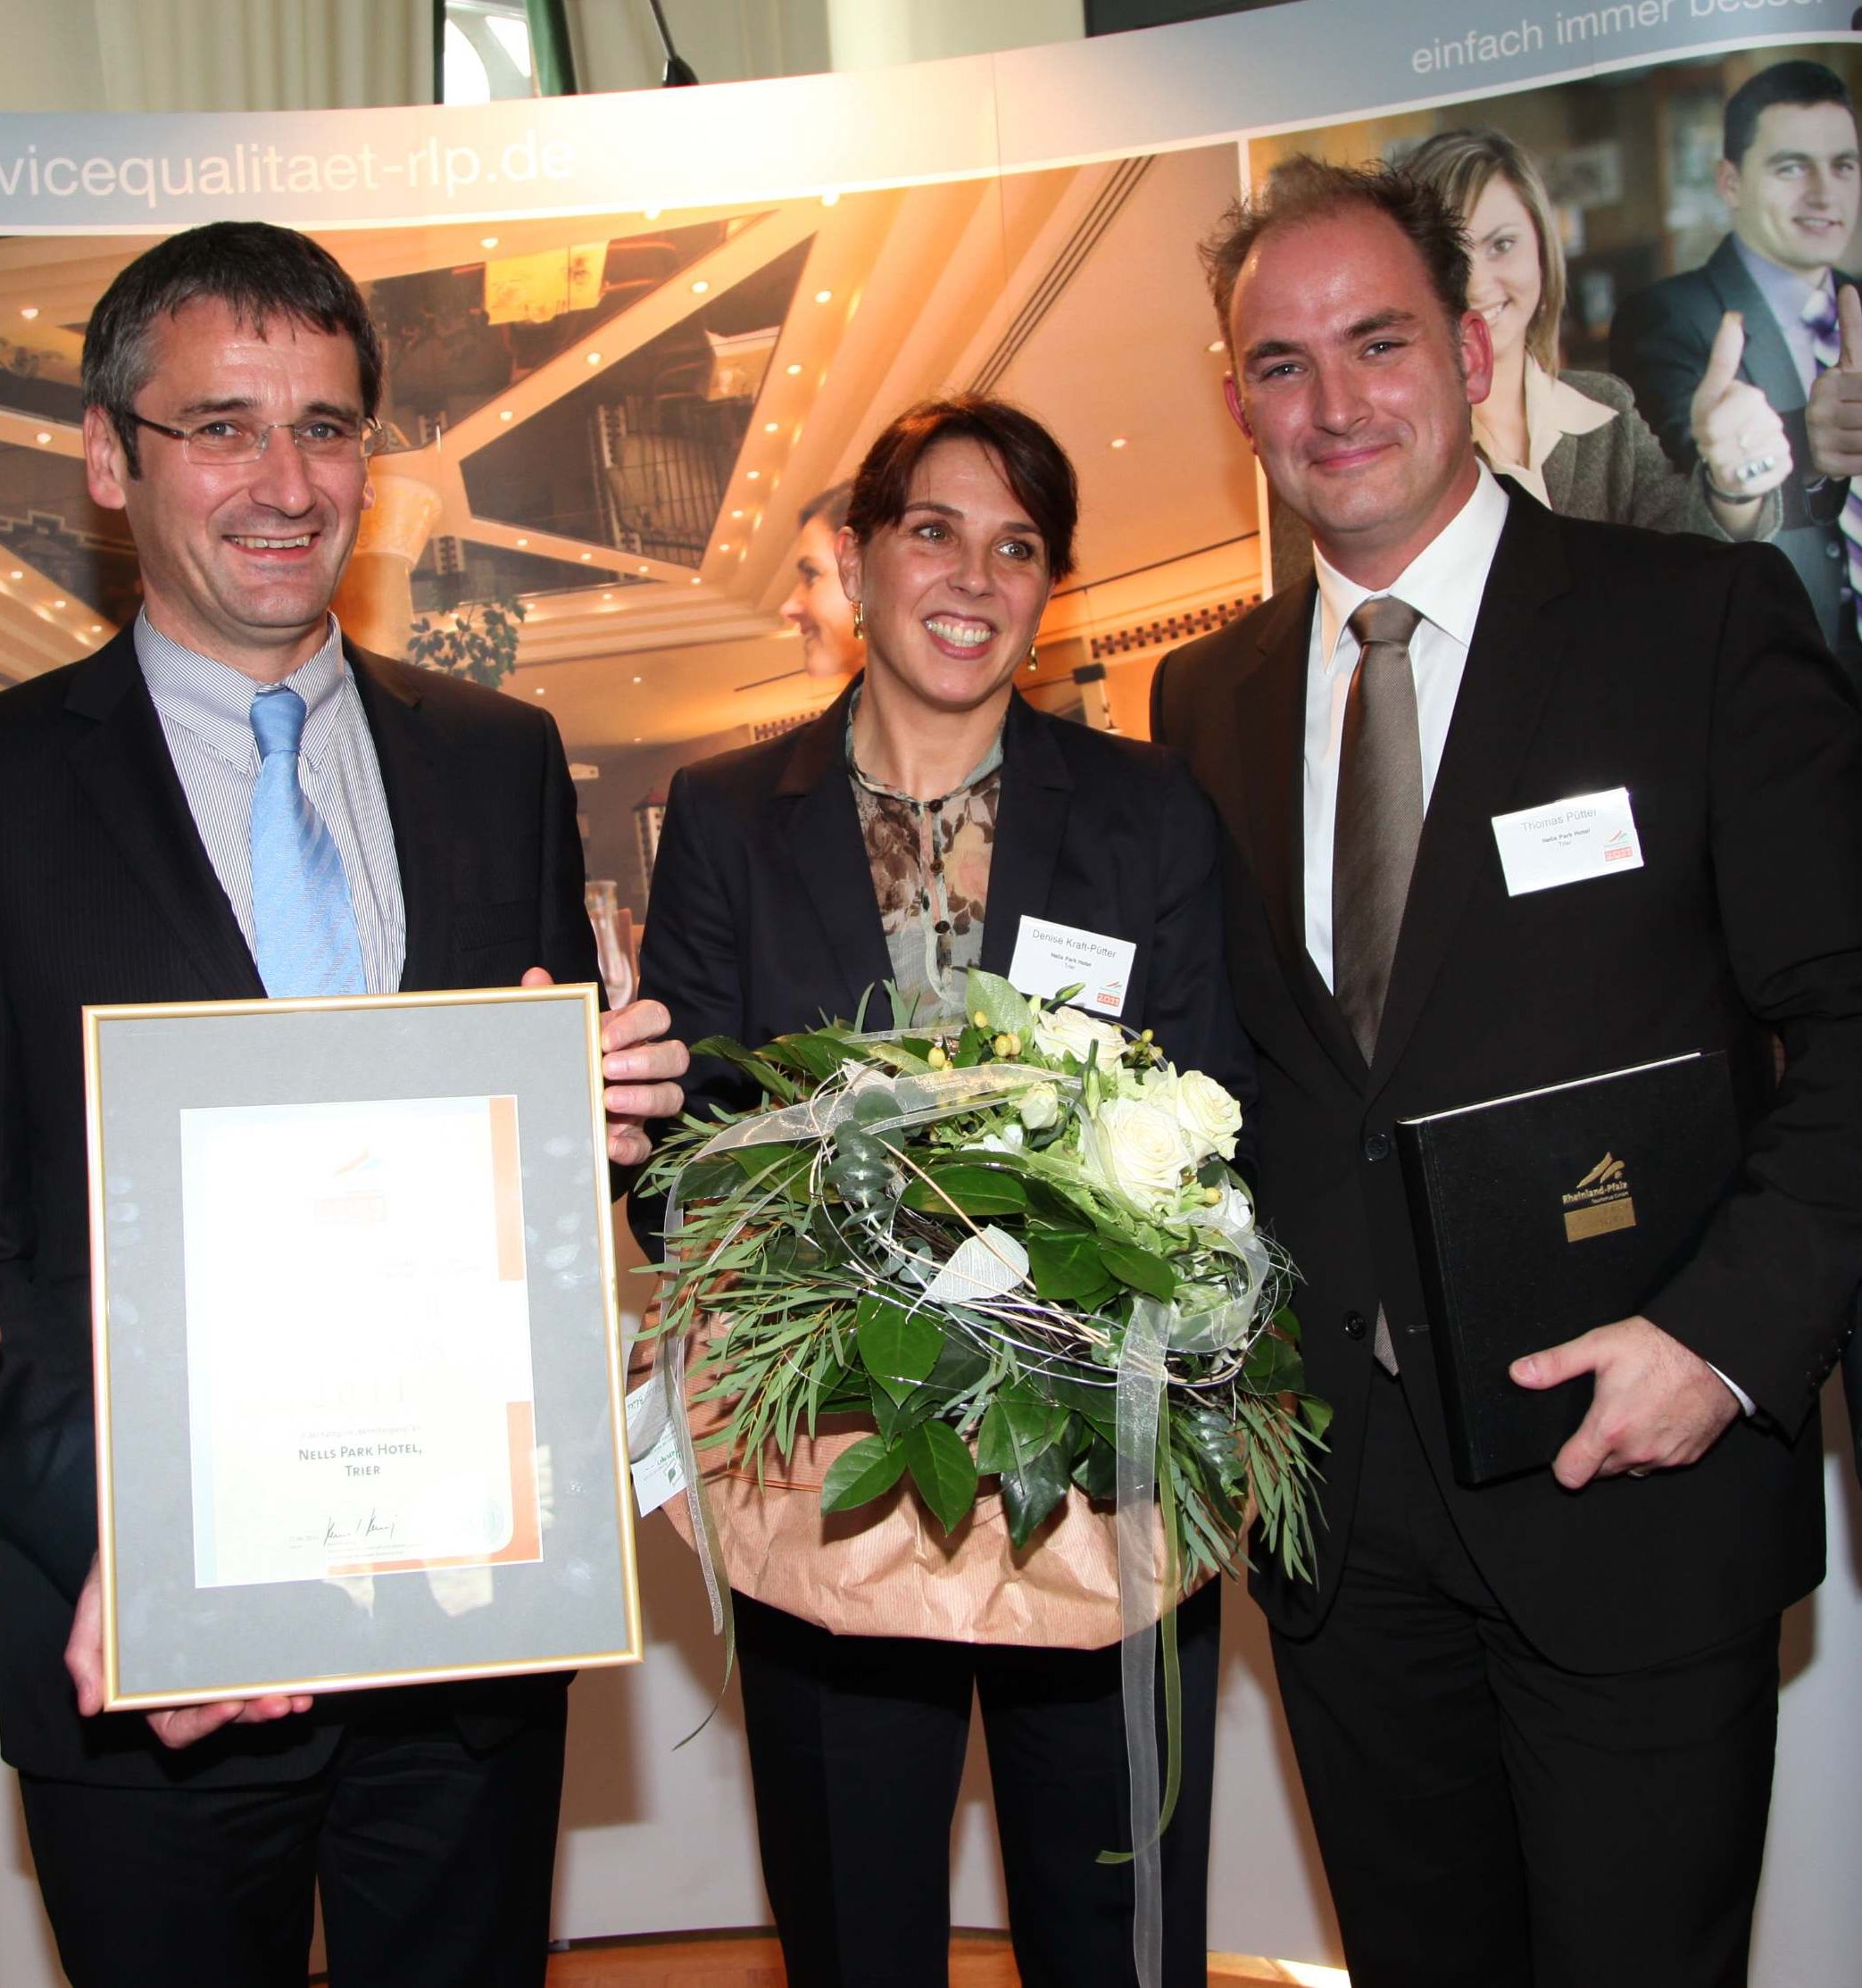  - Preisverleihung Gastgeber des Jahres 2011 Nells Park Hotel mit Hendrik Hering